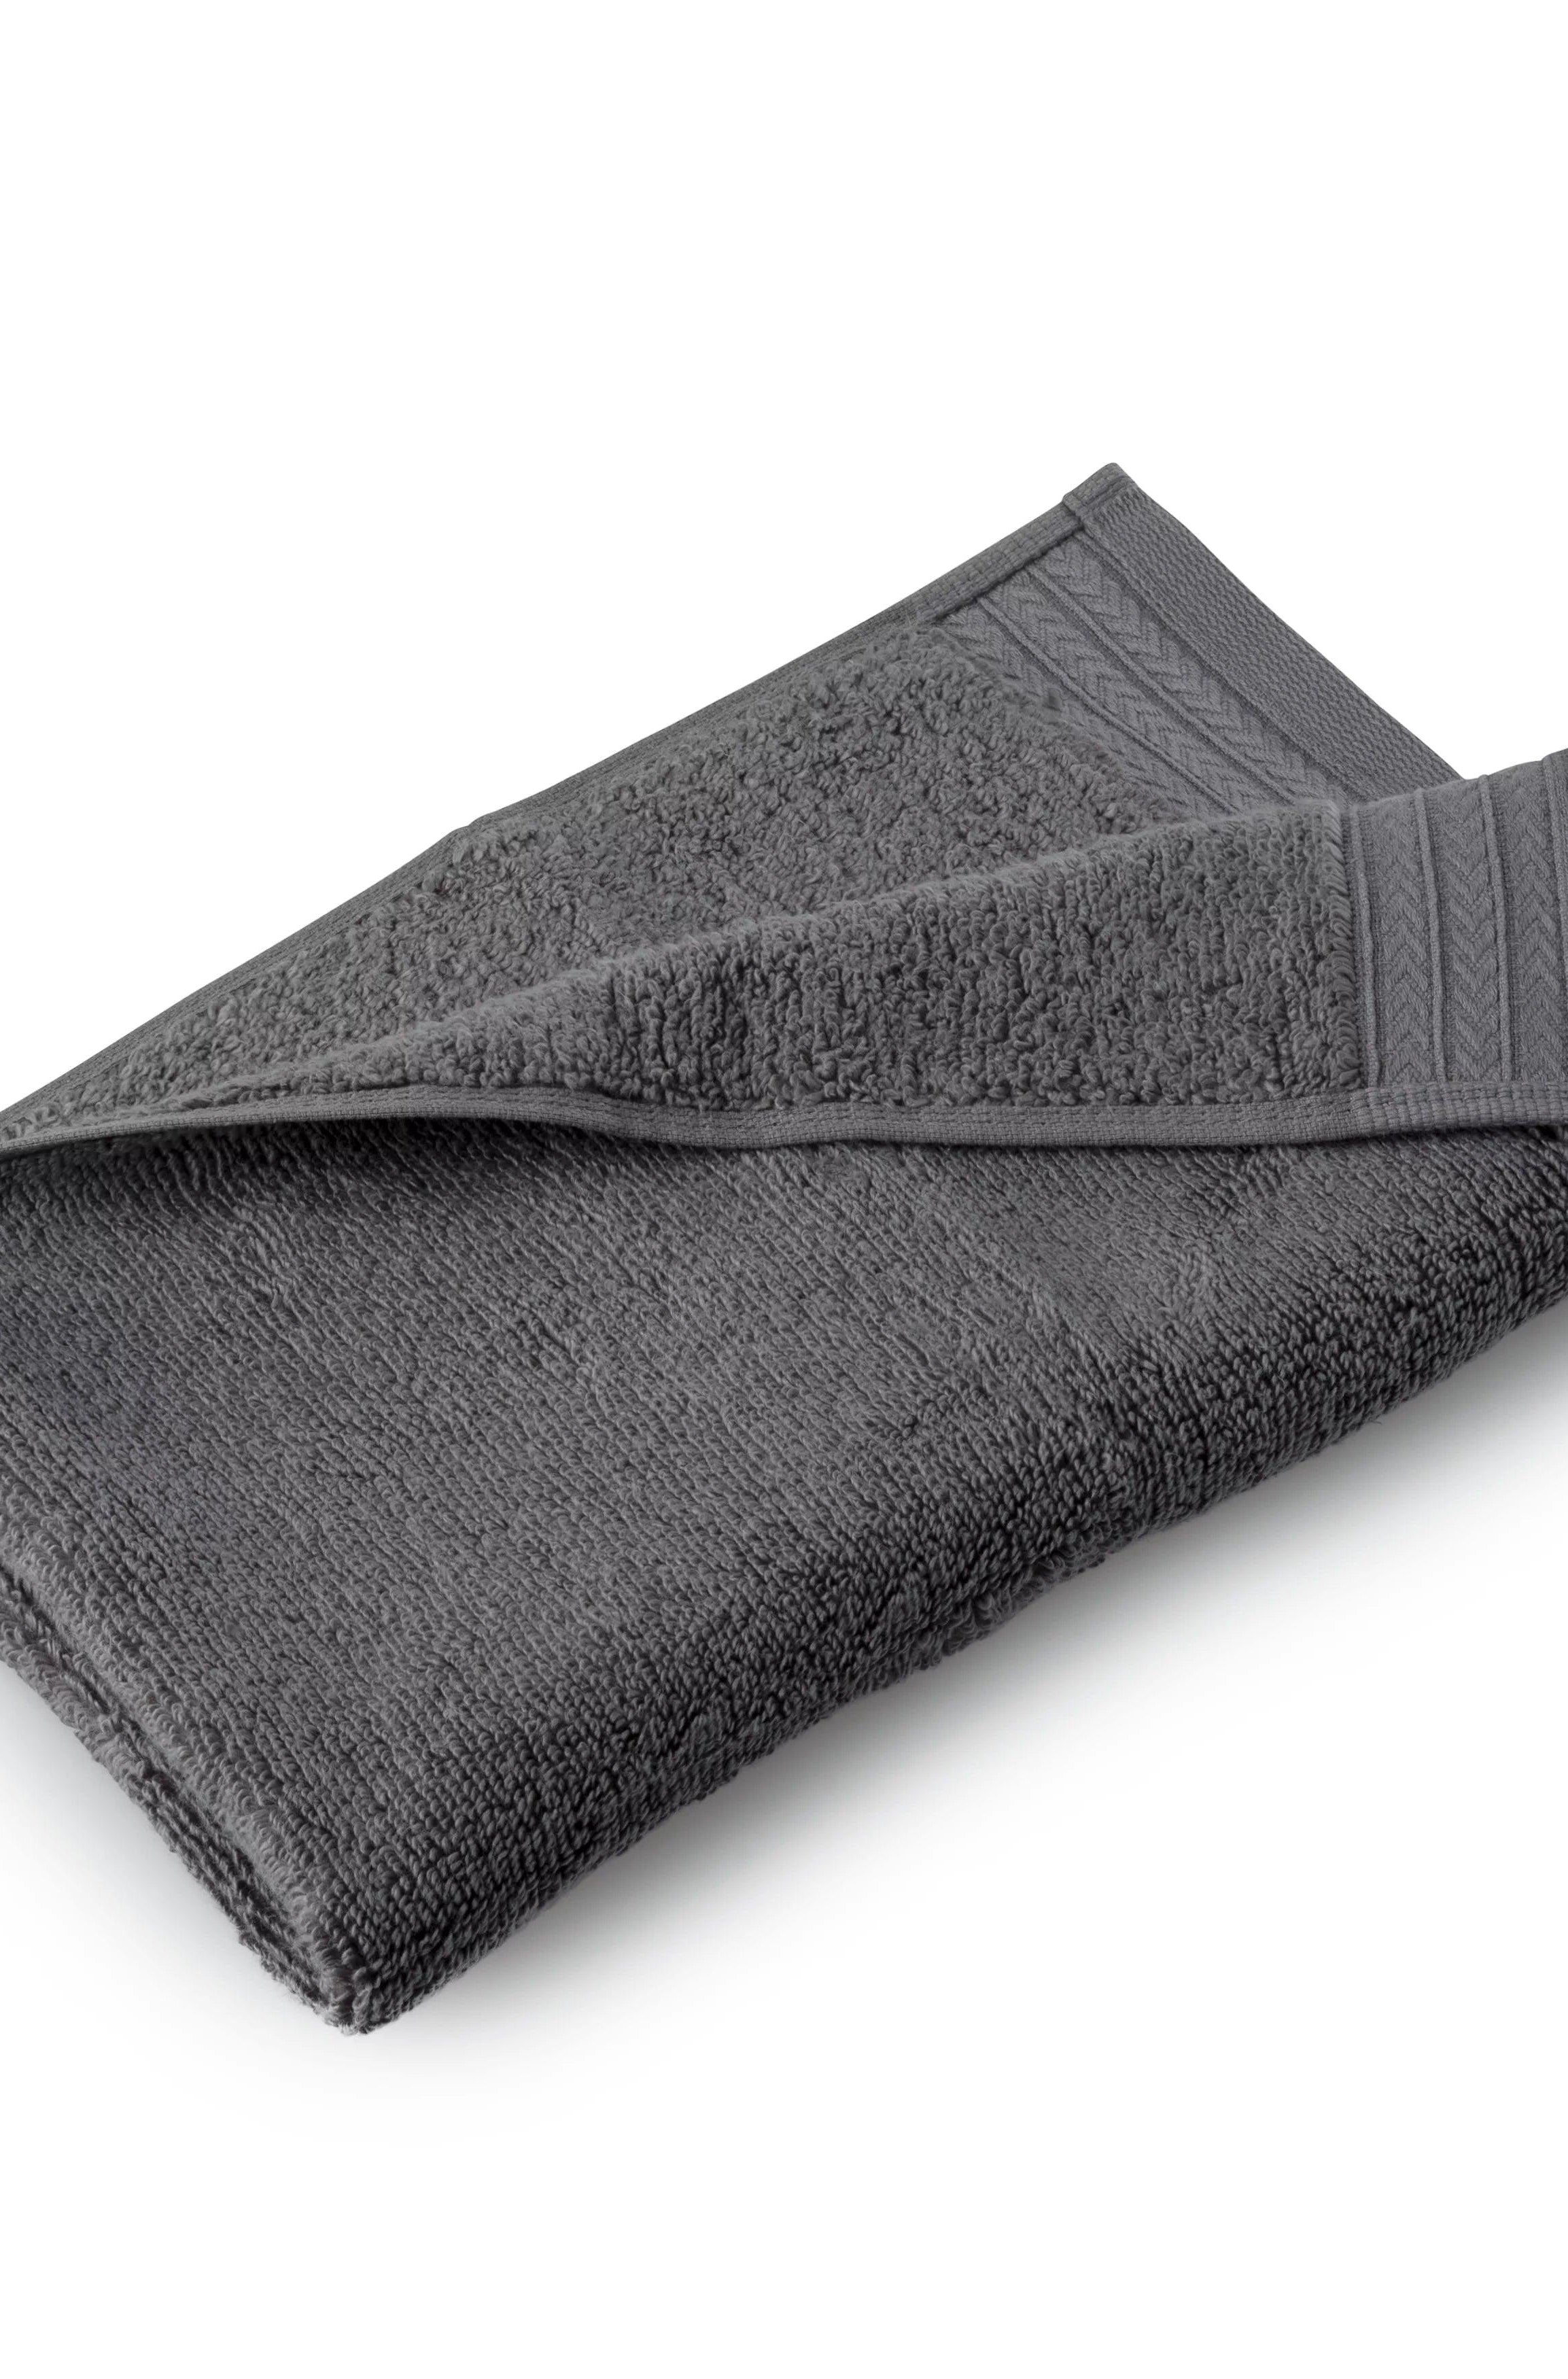 Egyptian Cotton Bath Towel Set of 6 - Dark Grey beddingbag.com